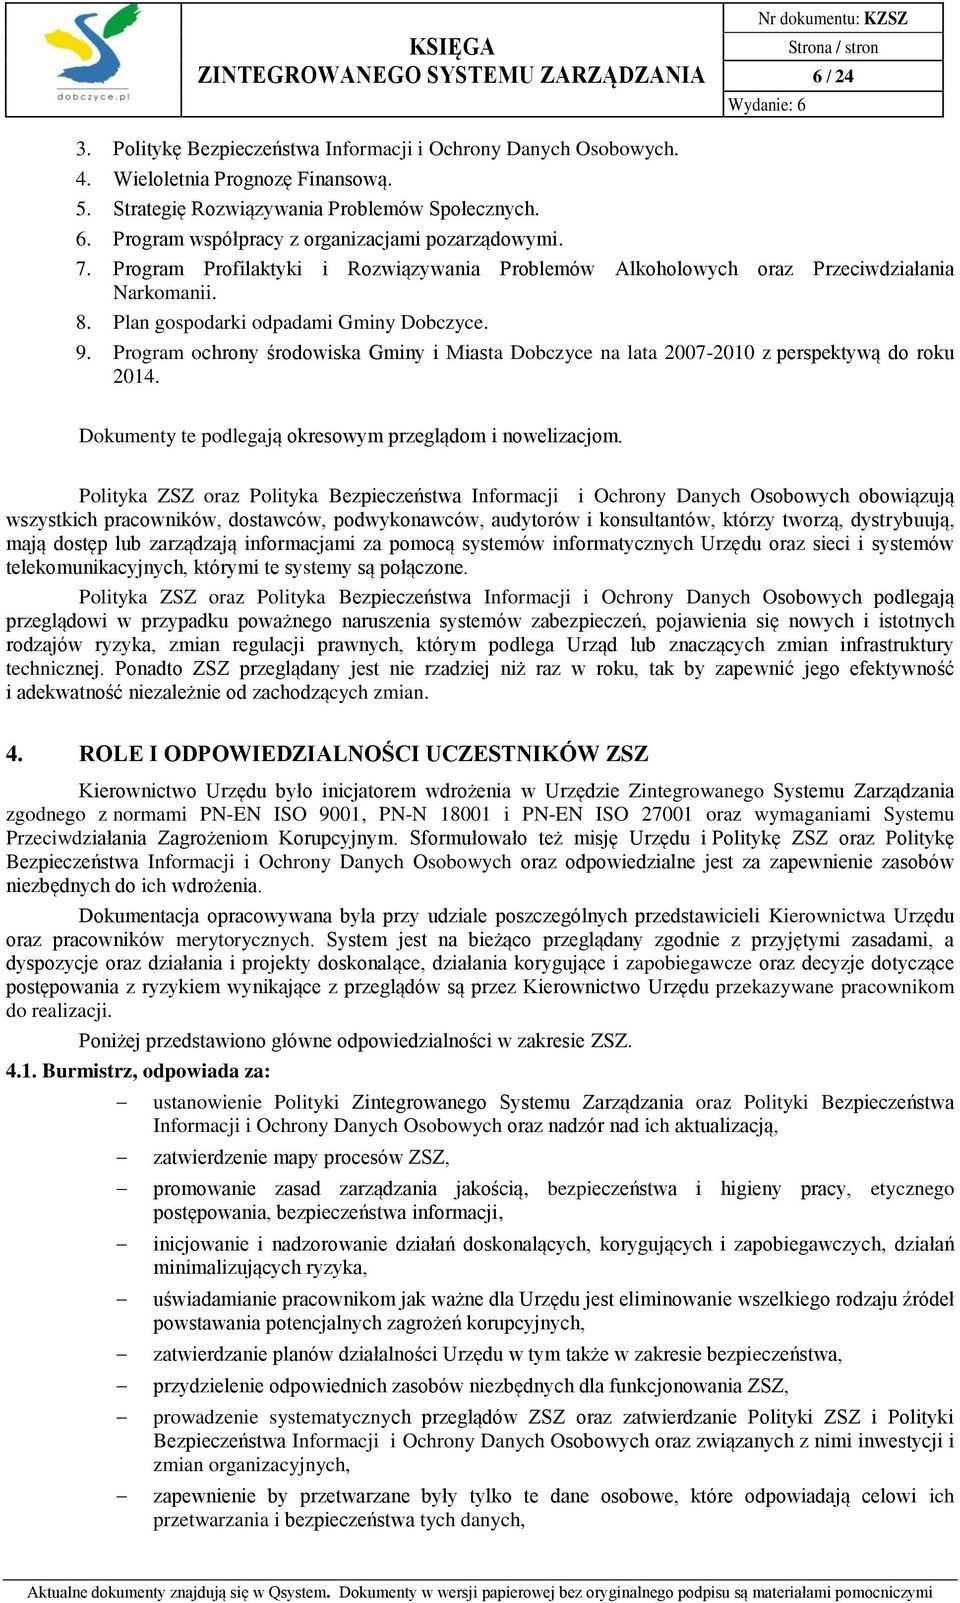 Program ochrony środowiska Gminy i Miasta Dobczyce na lata 2007-2010 z perspektywą do roku 2014. Dokumenty te podlegają okresowym przeglądom i nowelizacjom.